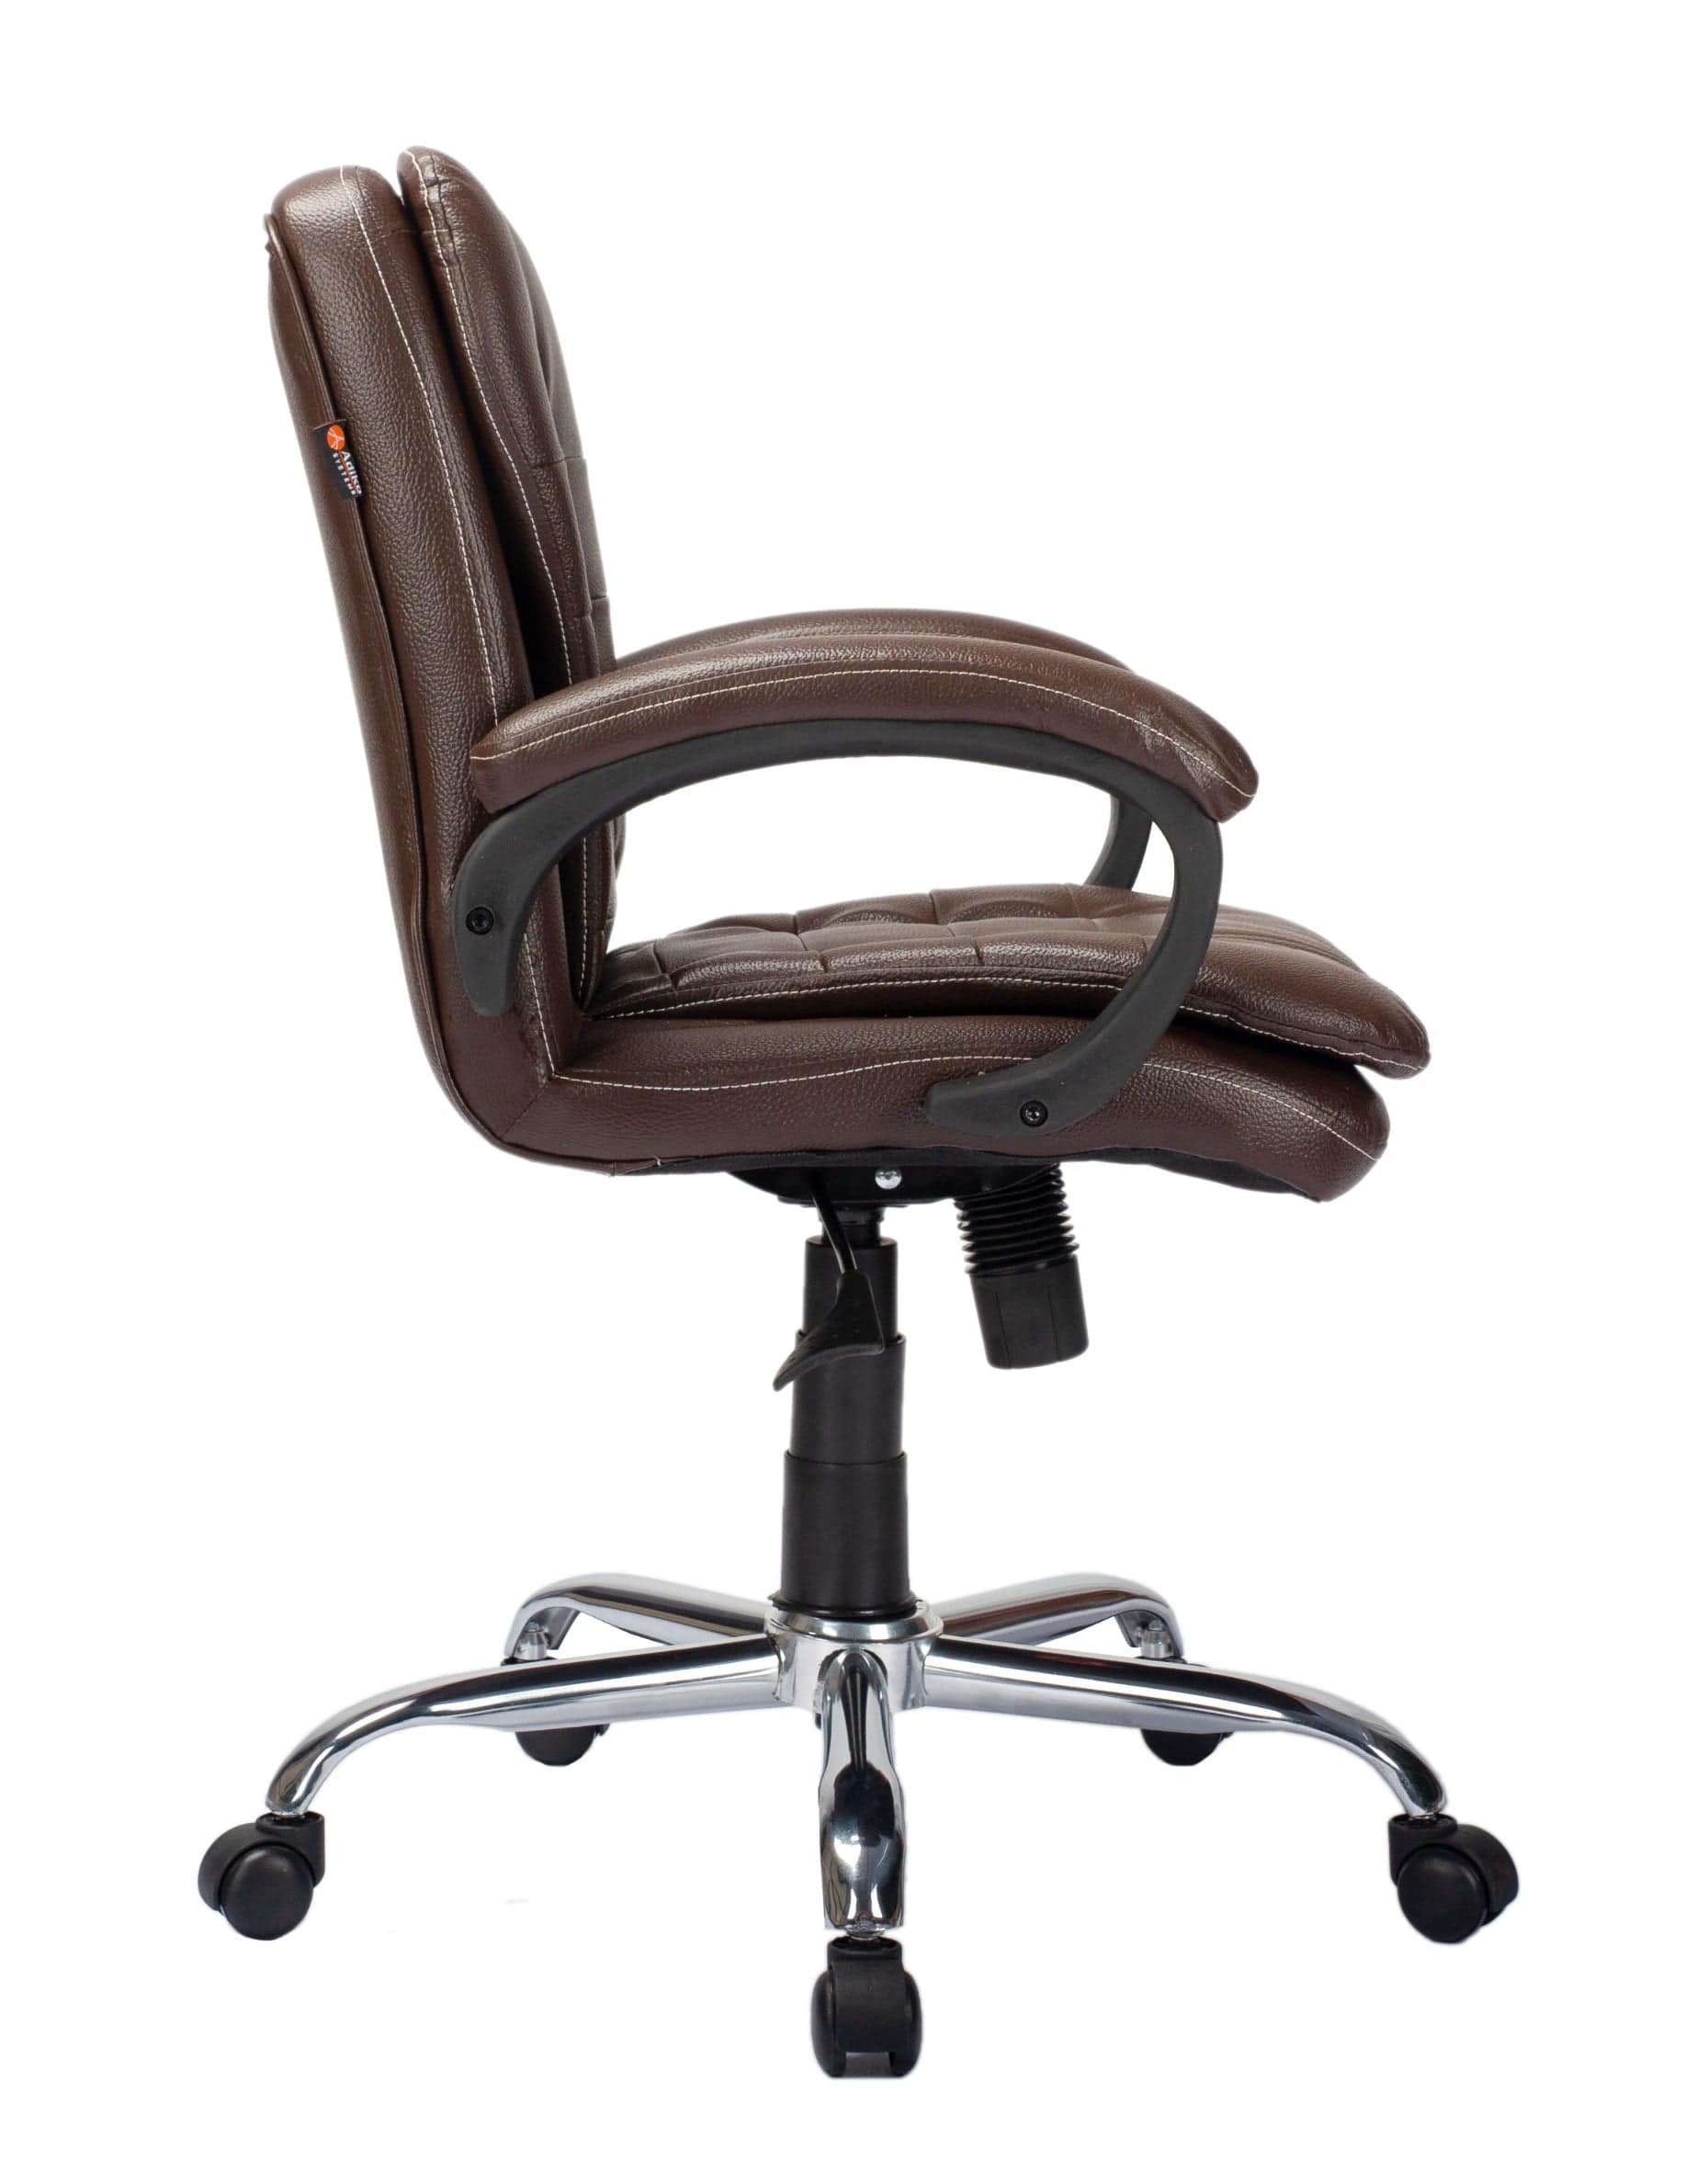 Adiko Stylish Low back Workstation Chair